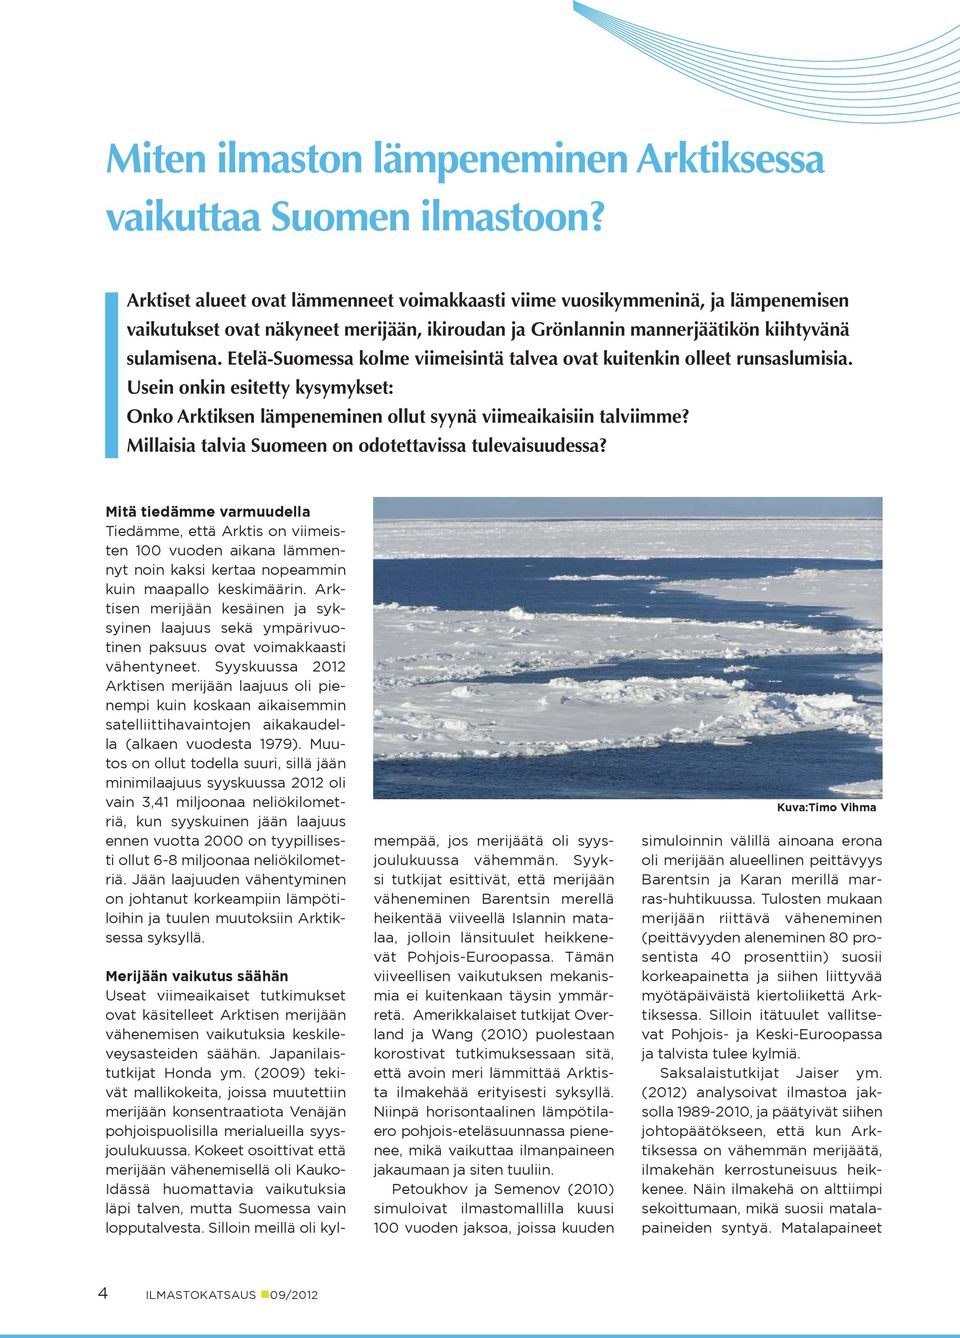 Etelä-Suomessa kolme viimeisintä talvea ovat kuitenkin olleet runsaslumisia. Usein onkin esitetty kysymykset: Onko Arktiksen lämpeneminen ollut syynä viimeaikaisiin talviimme?